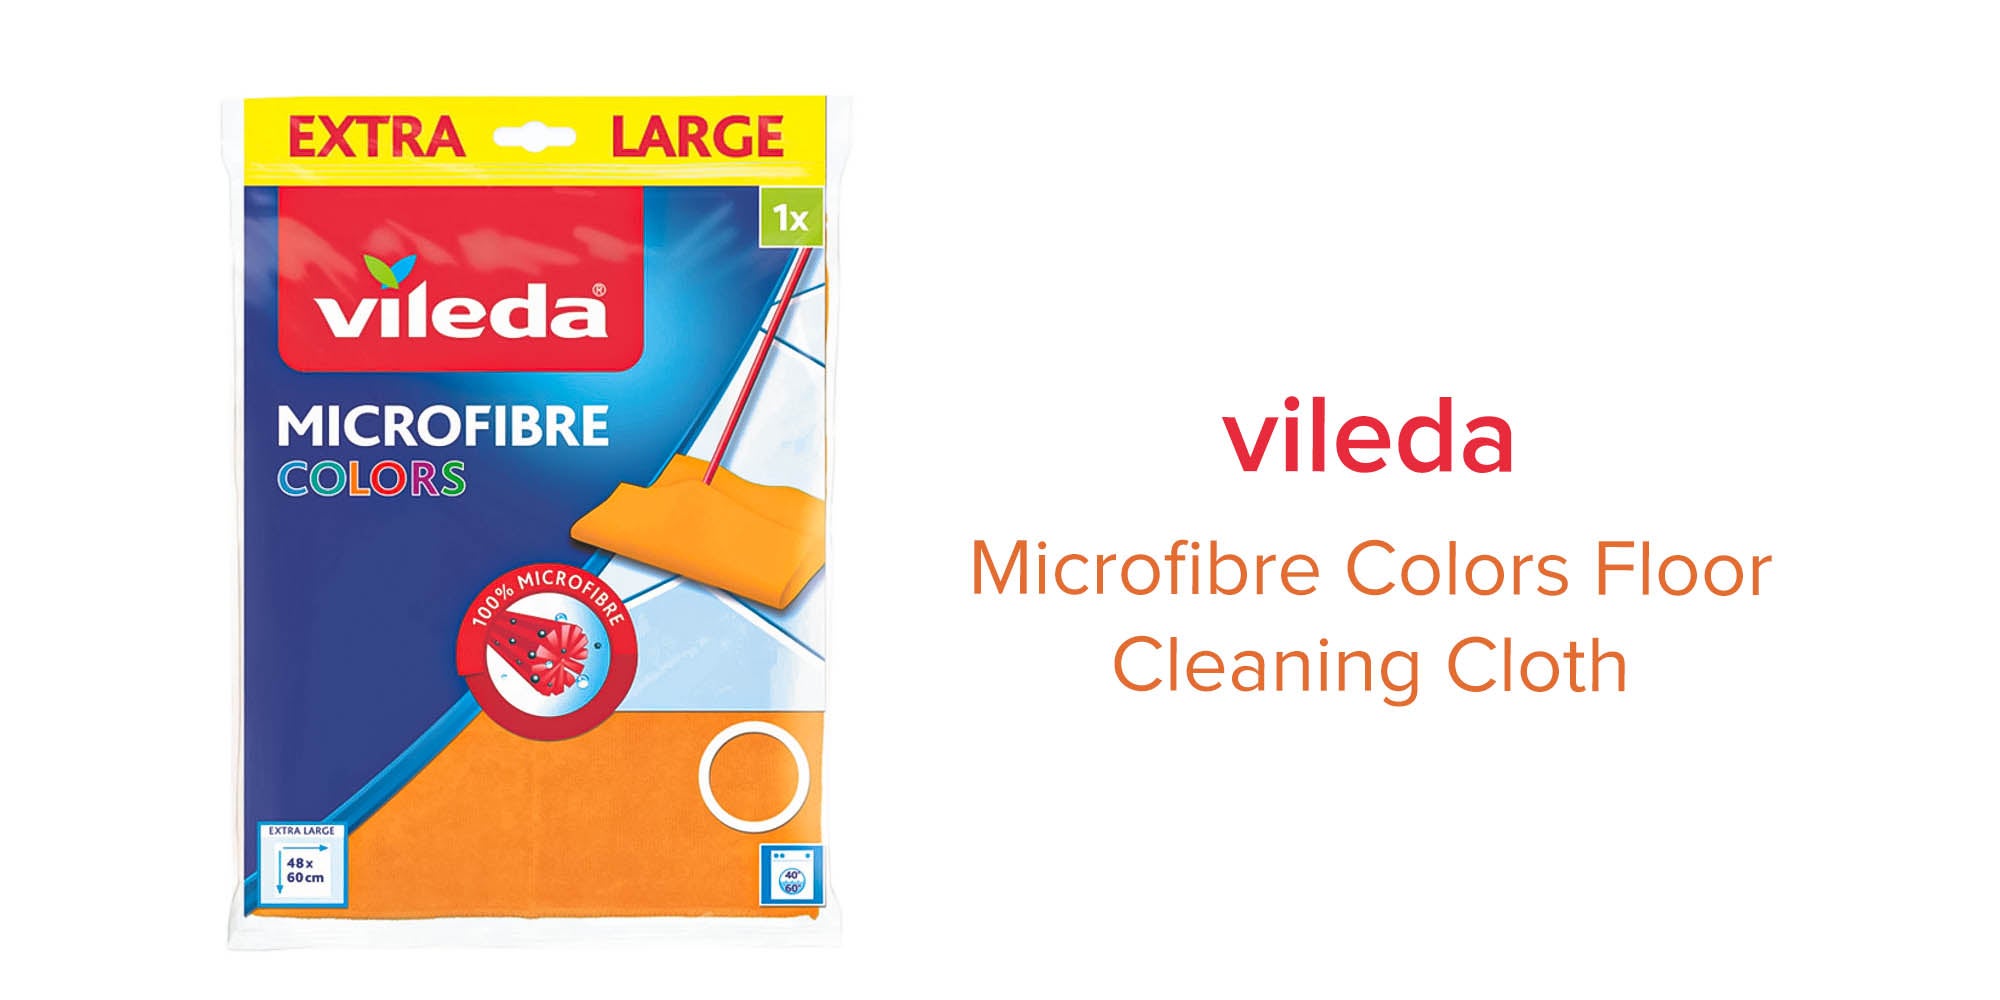 VILEDA - Microfibre Floor - Floors Cleaning Cloth